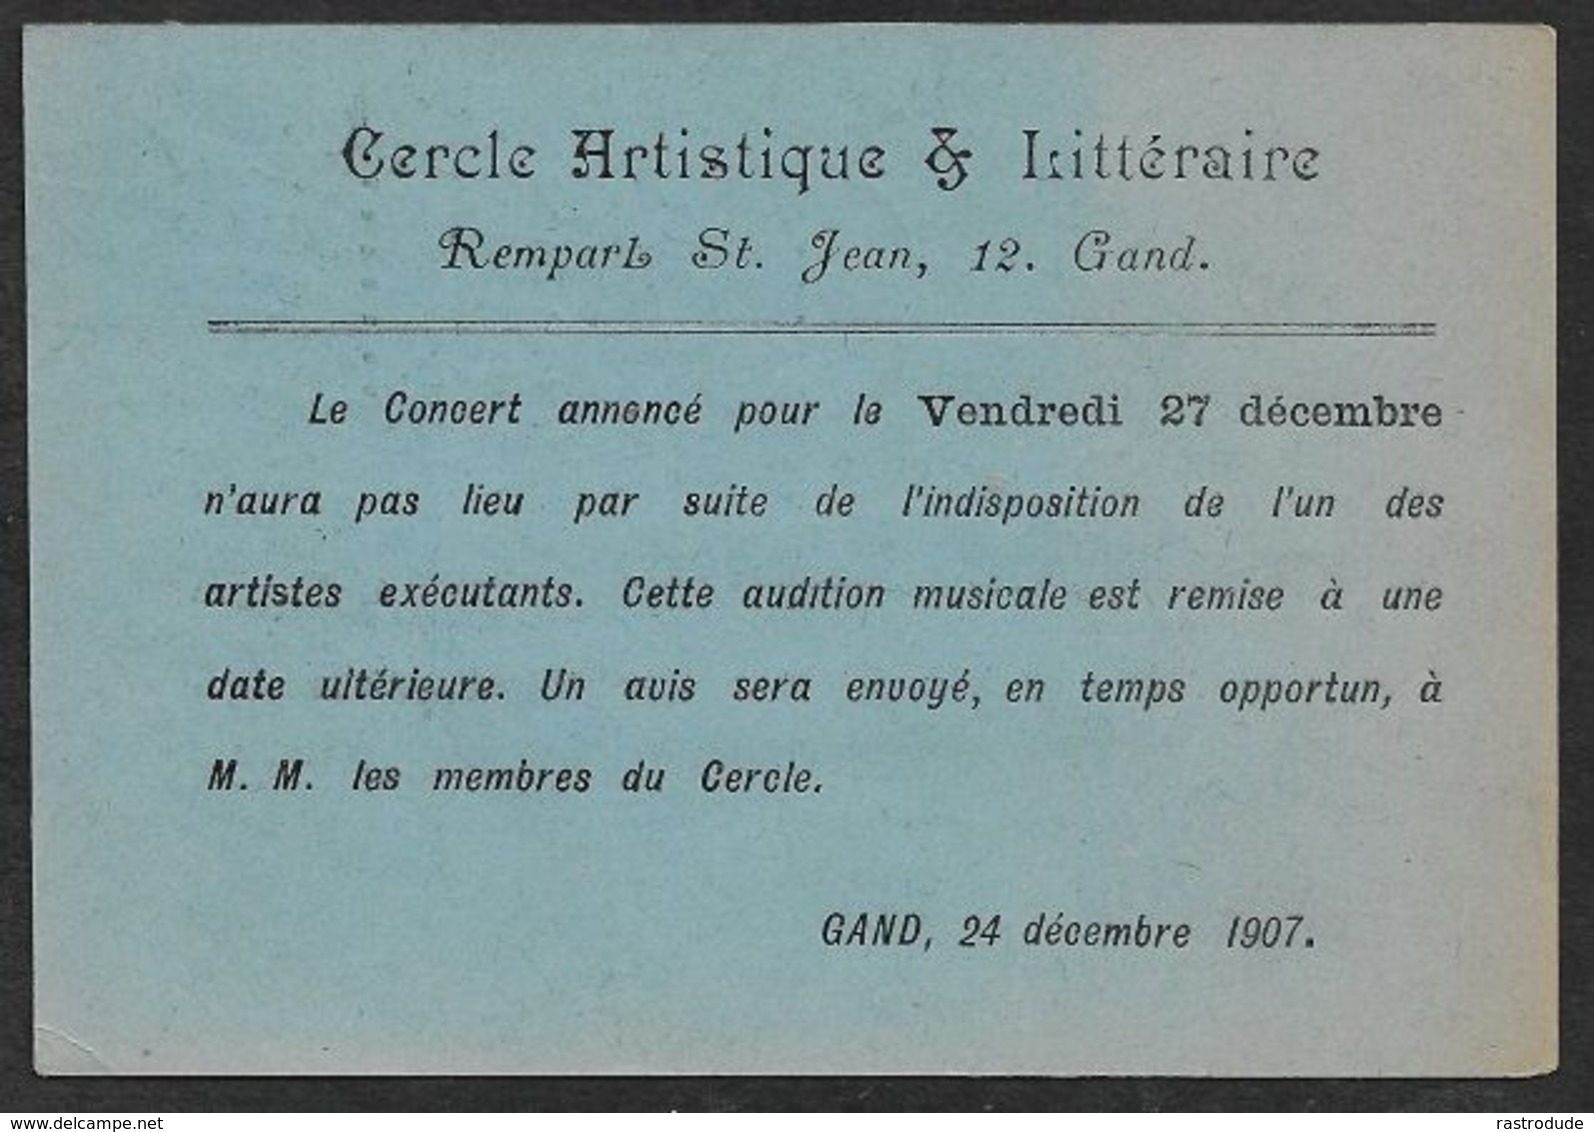 1907 BELGIQUE - 1C  - IMPRIMÉ CERCLE ARTISTIQUE & LITTÉRAIRE -  ANNULATION D'UN CONCERT - INDISPOSITION DE UN  ARTISTE - Rolstempels 1900-09